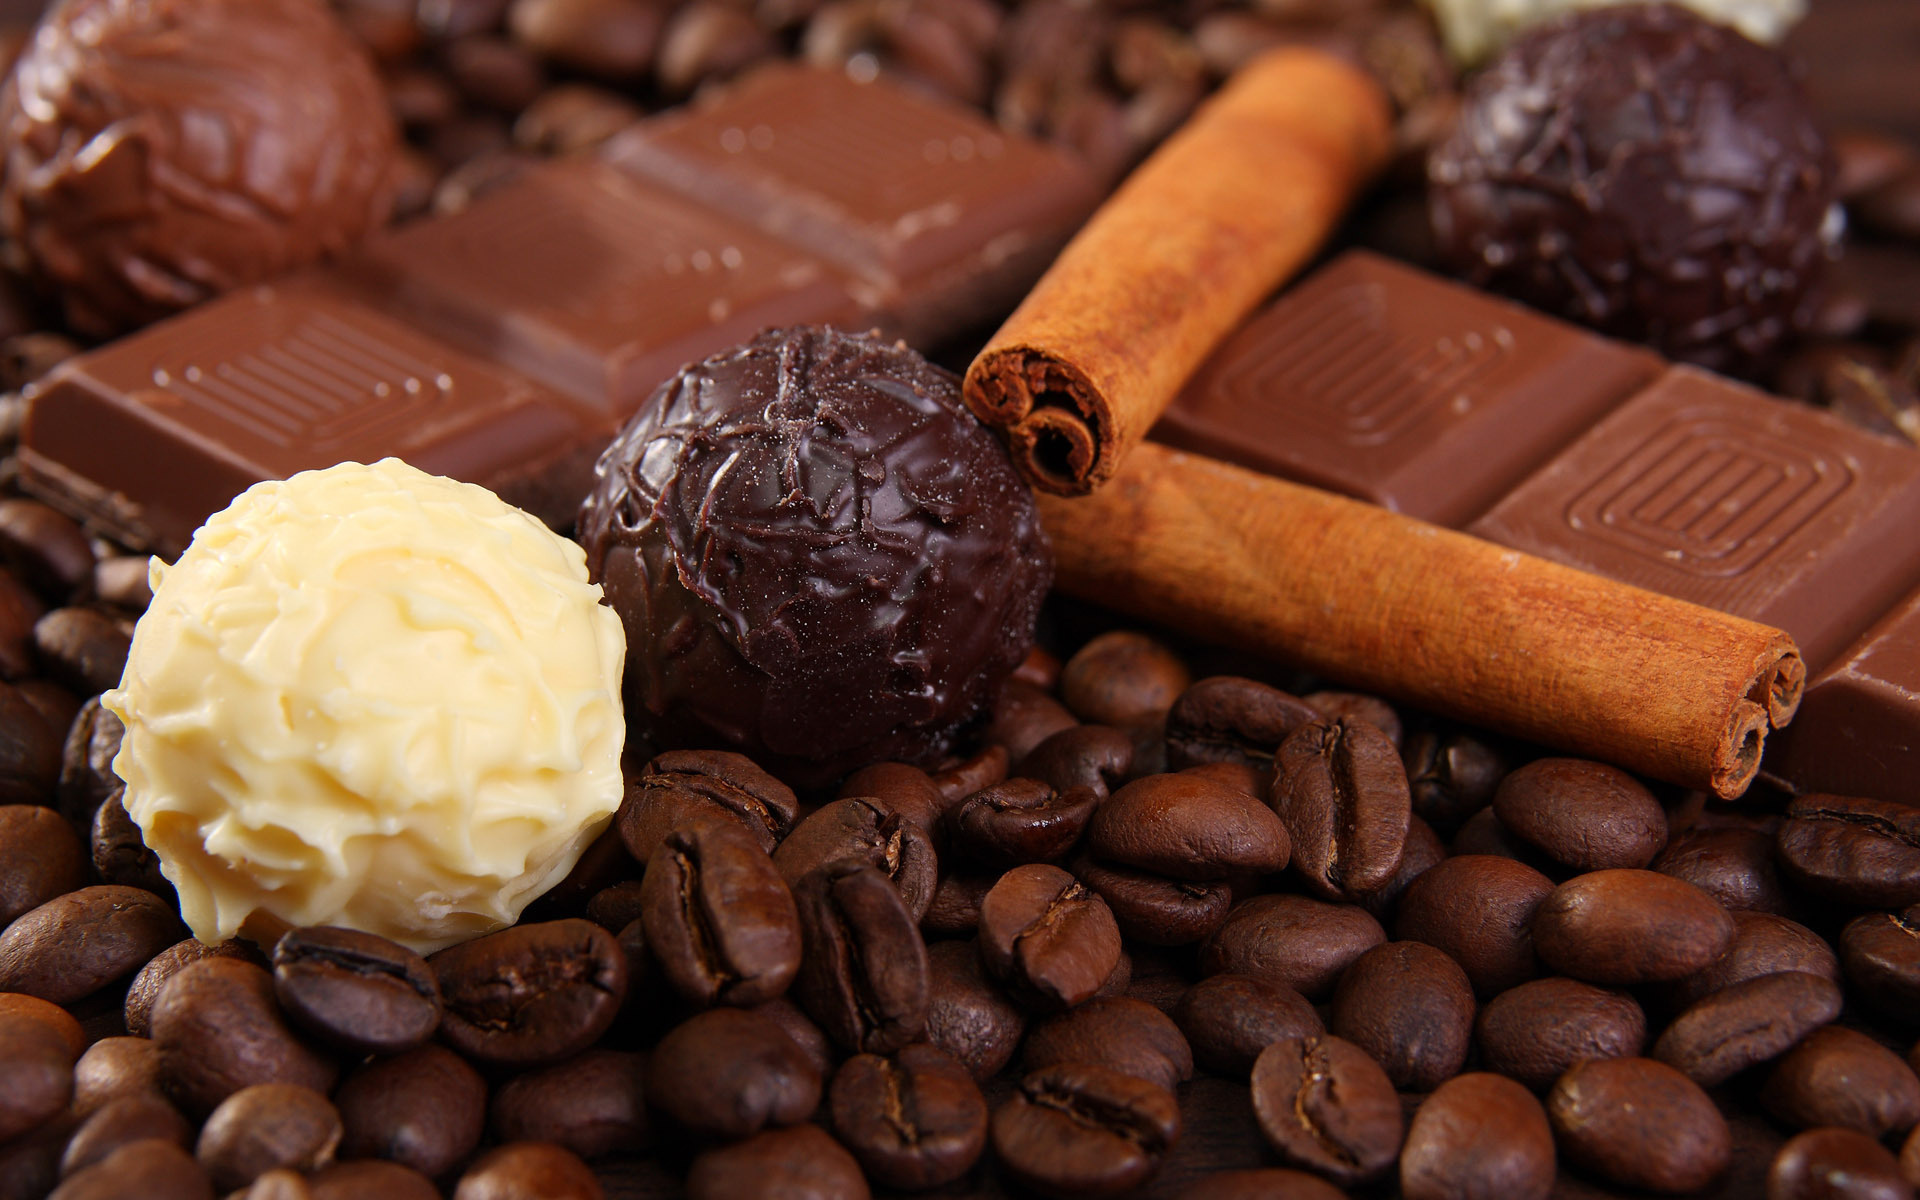 текстура, шоколад, какао, chocolate texture, скачать фото, фон, background